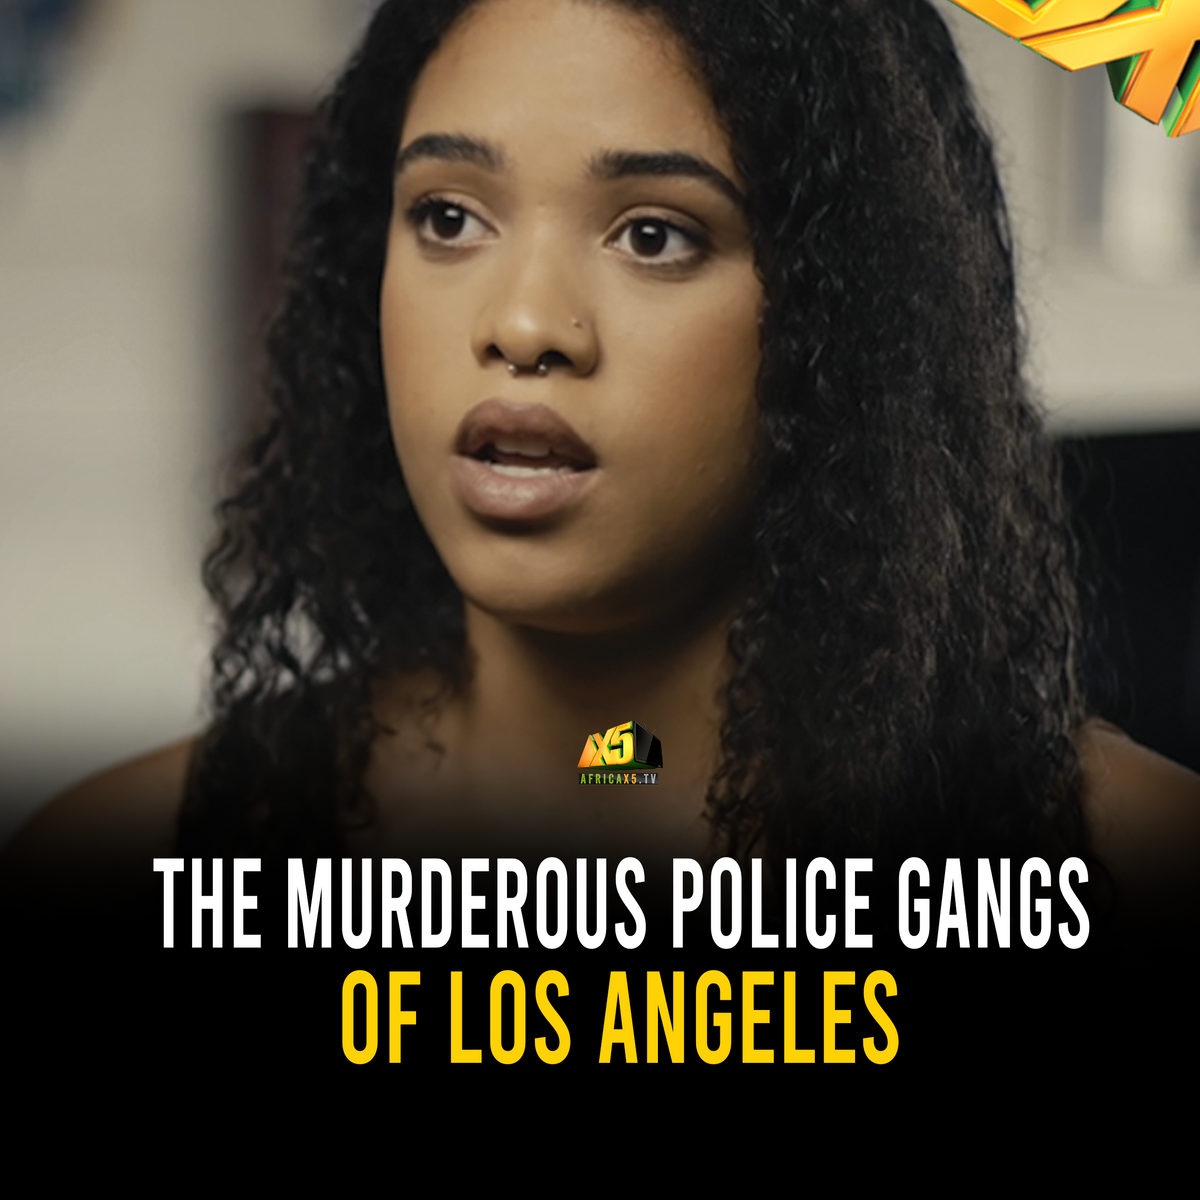 Instagram Post: The Murderous Police Gangs of Los Angeles